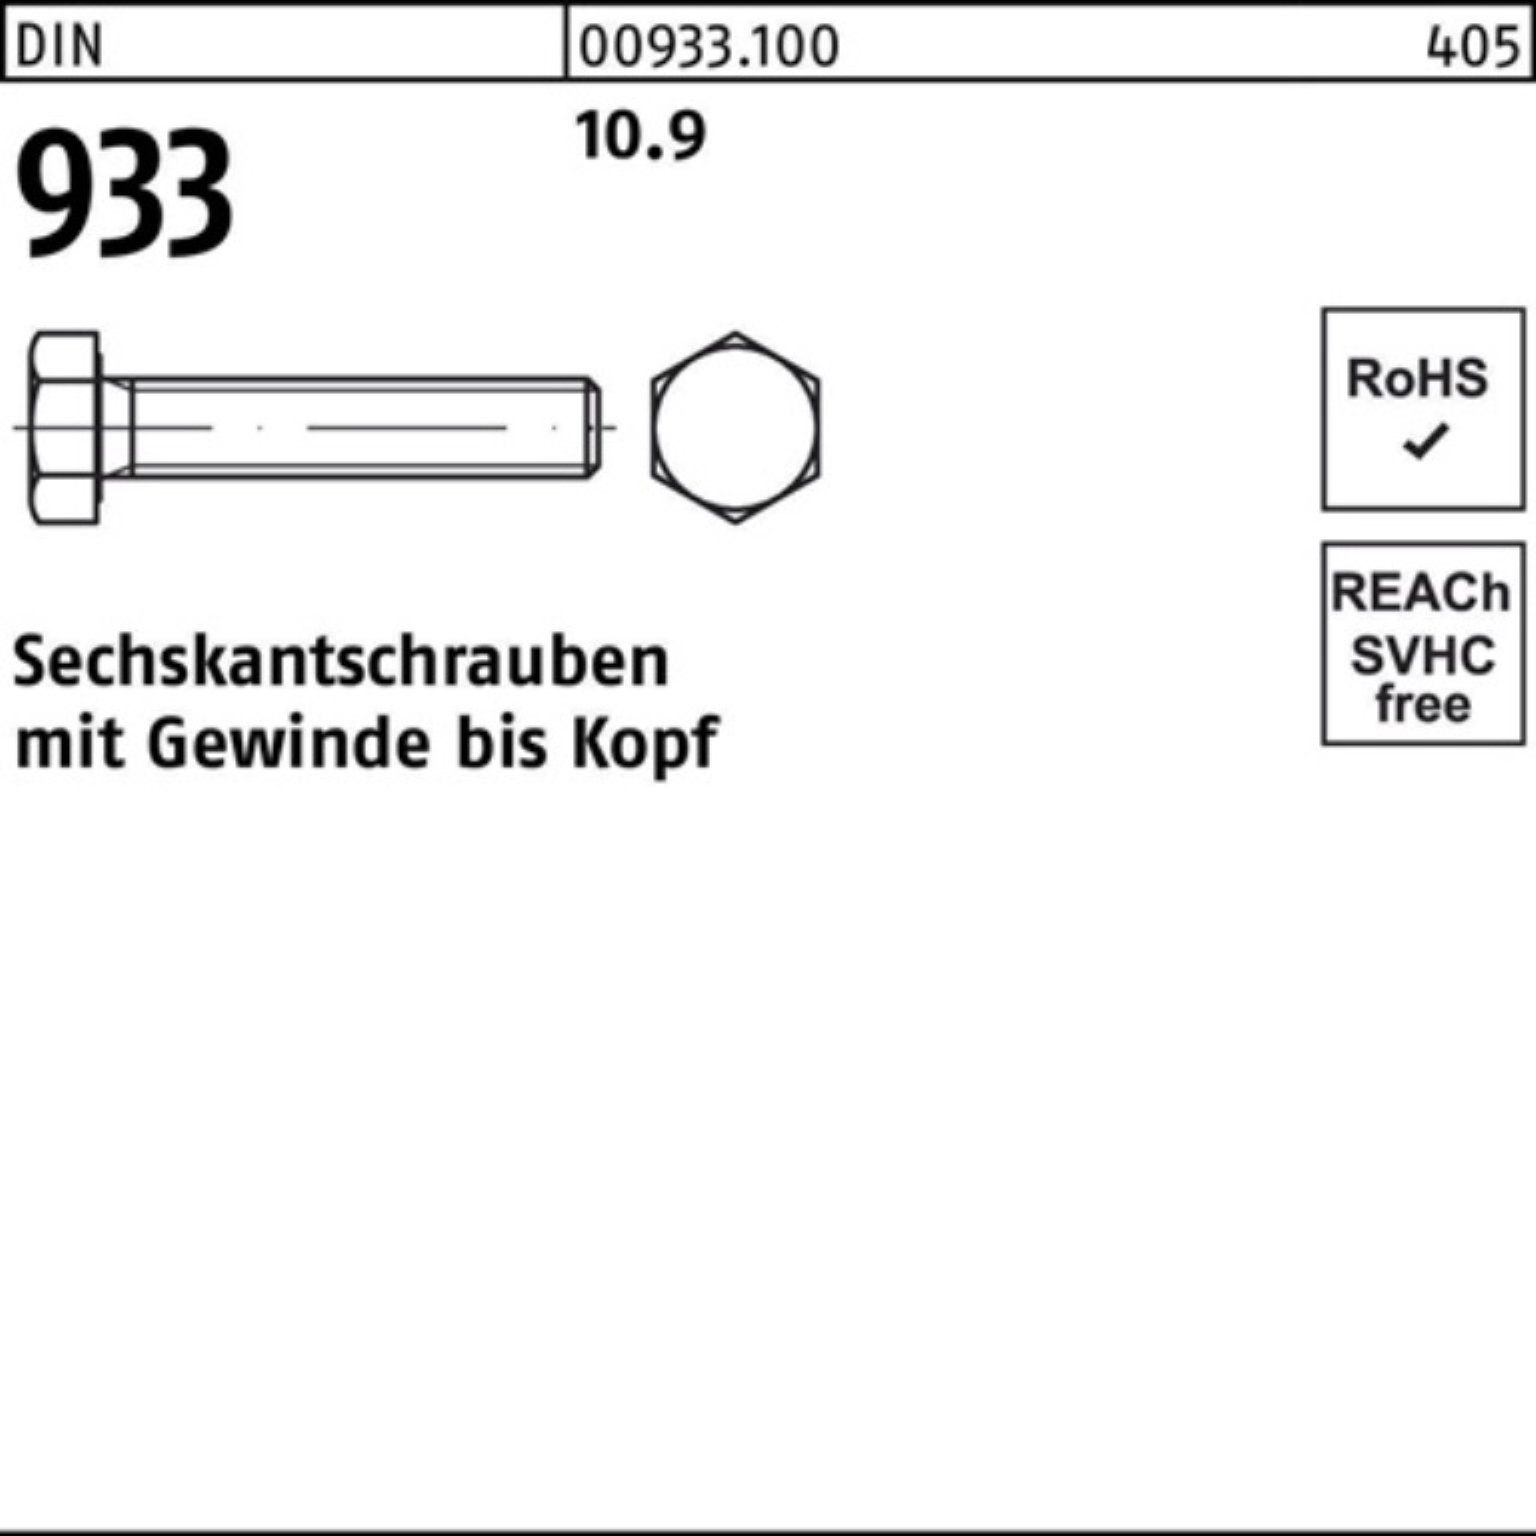 VG DIN 100 93 Reyher 150 M8x DIN Stück Sechskantschraube 10.9 Sechskantschraube Pack 933 100er